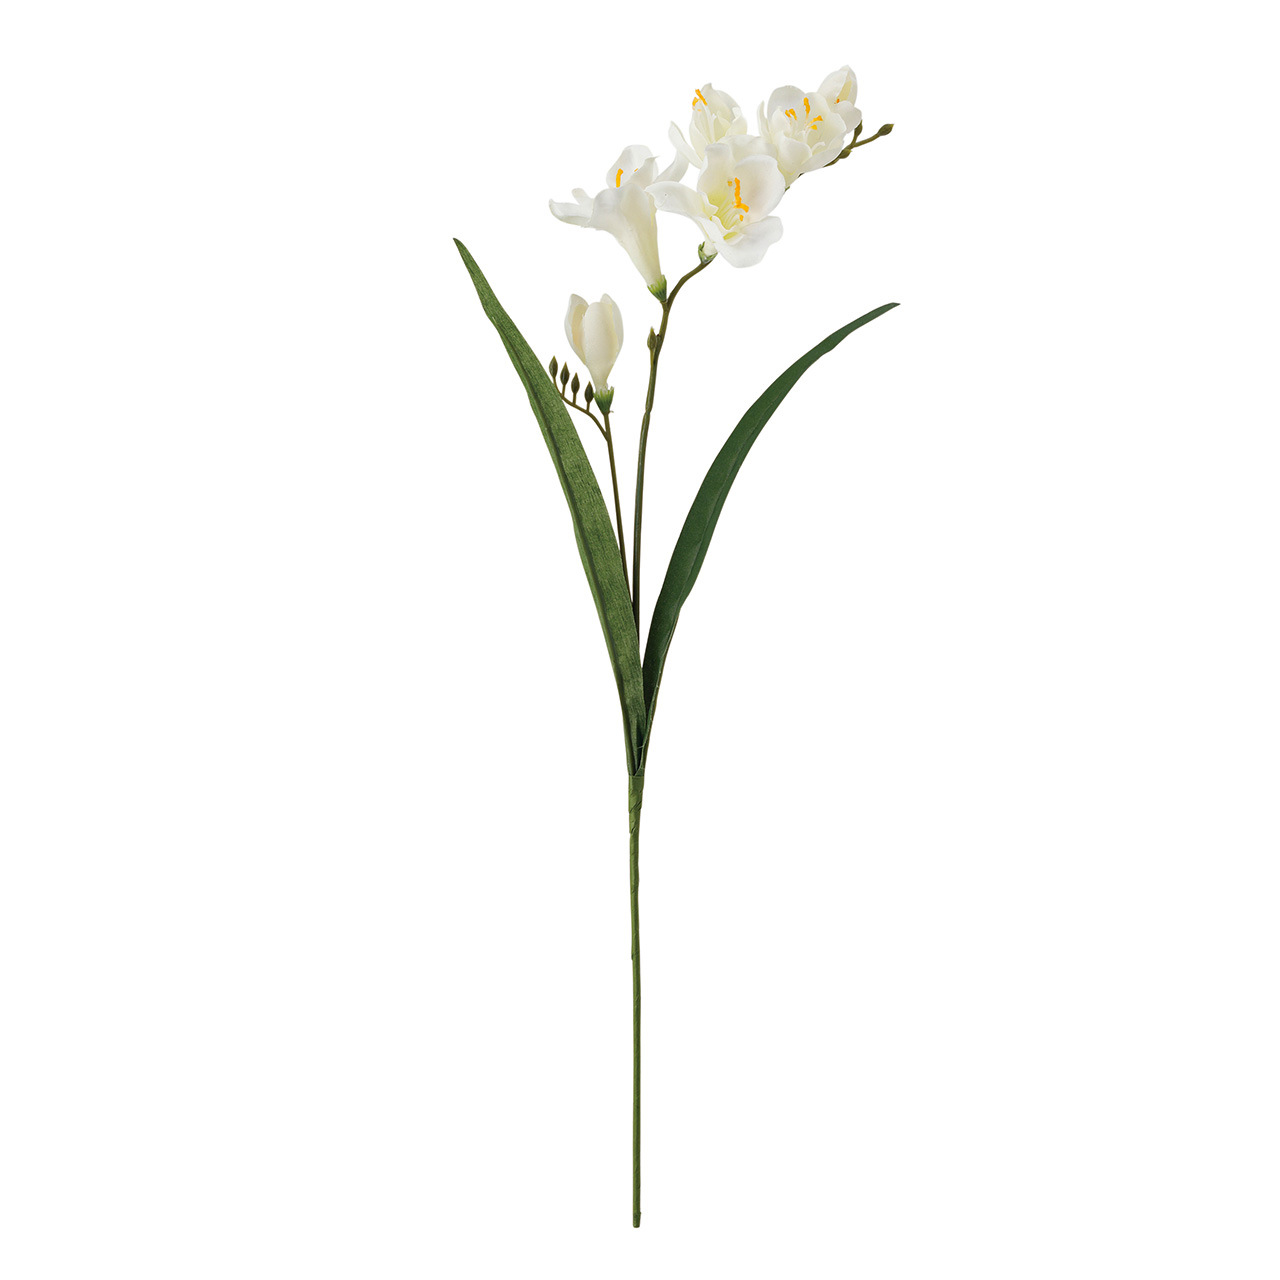 マイフラ】 通販/MAGIQ マリナフリージア クリーム アーティフィシャルフラワー 造花 小花 FM001832-001(クリーム):  MAGIQ(アーティフィシャルフラワー 造花)/全国にMAGIQ、花器、花資材などをお届けします。